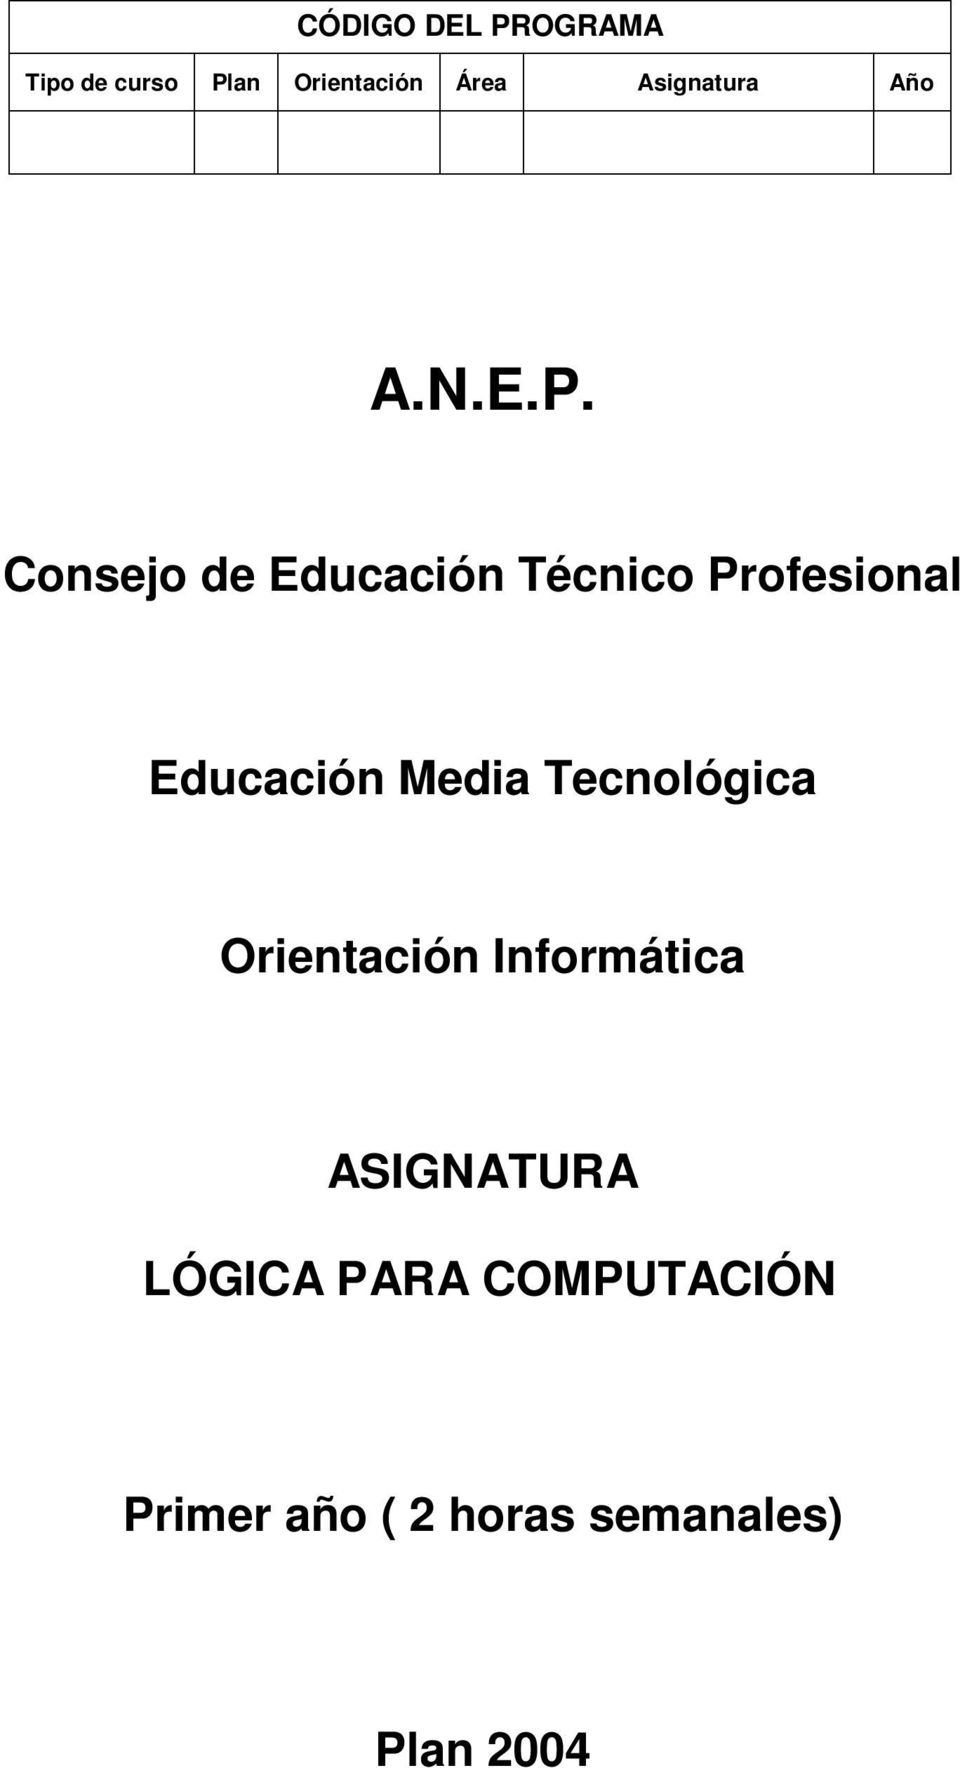 Consejo de Educación Técnico Profesional Educación Media